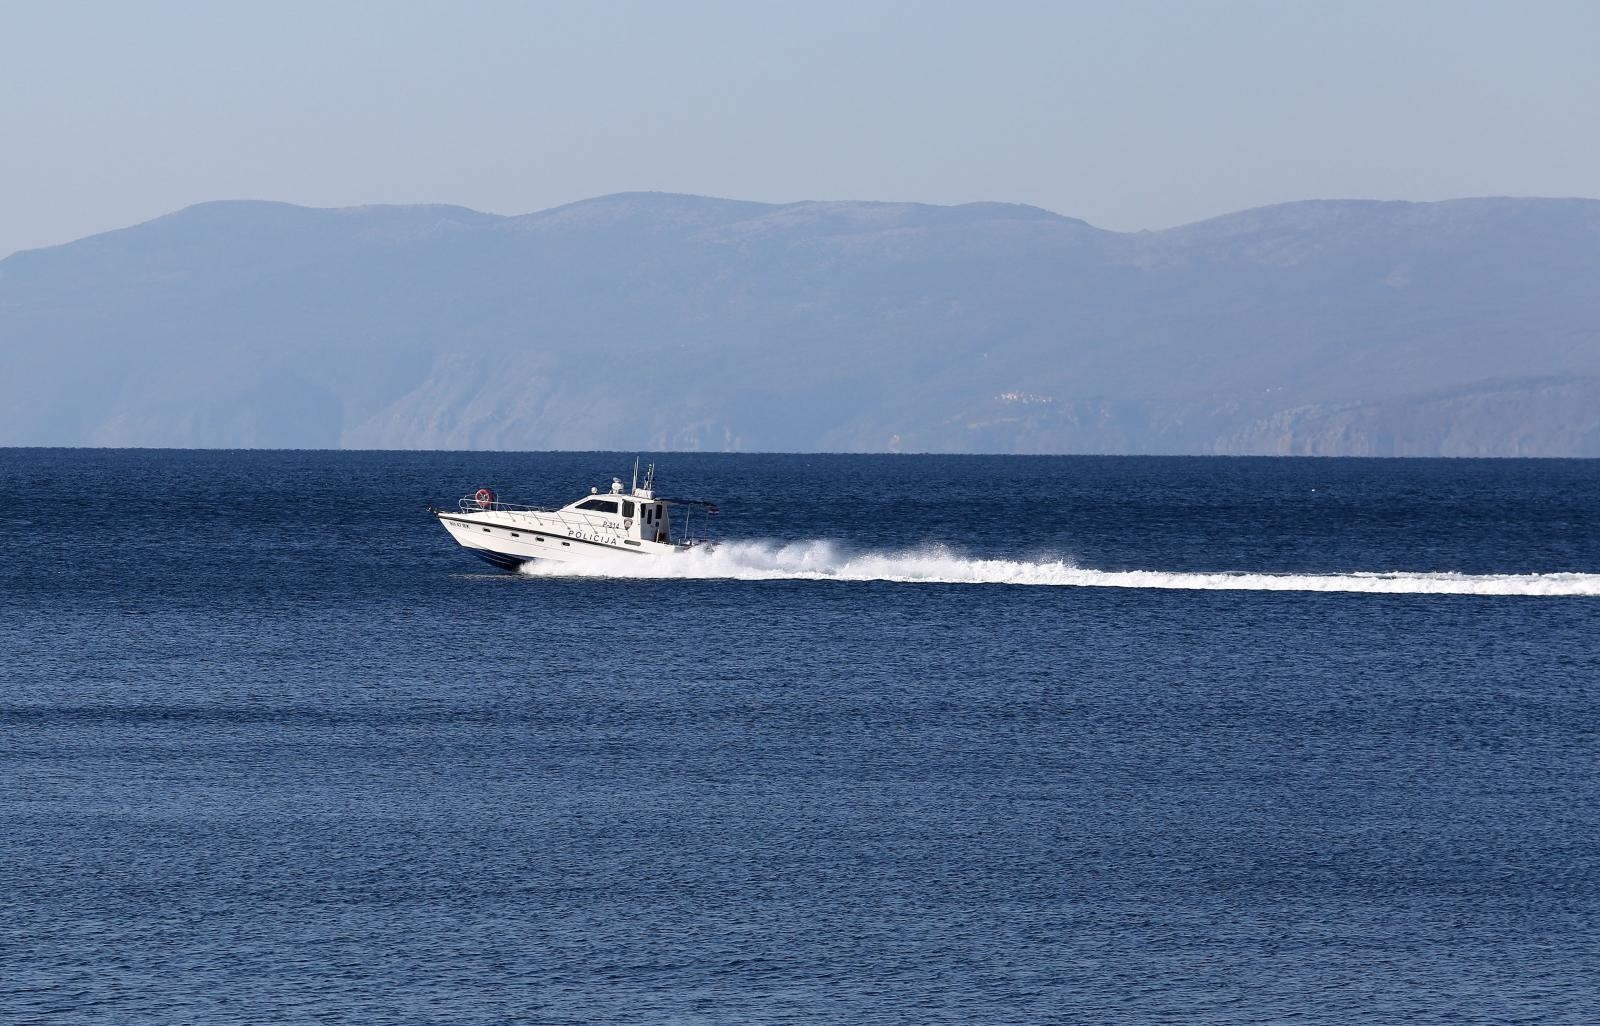 02.04.2020., Rijeka - Gliser pomorske policije na moru u Kvarnerskom zaljevu. Ilustracija
Photo:Goran Kovacic/PIXSELL